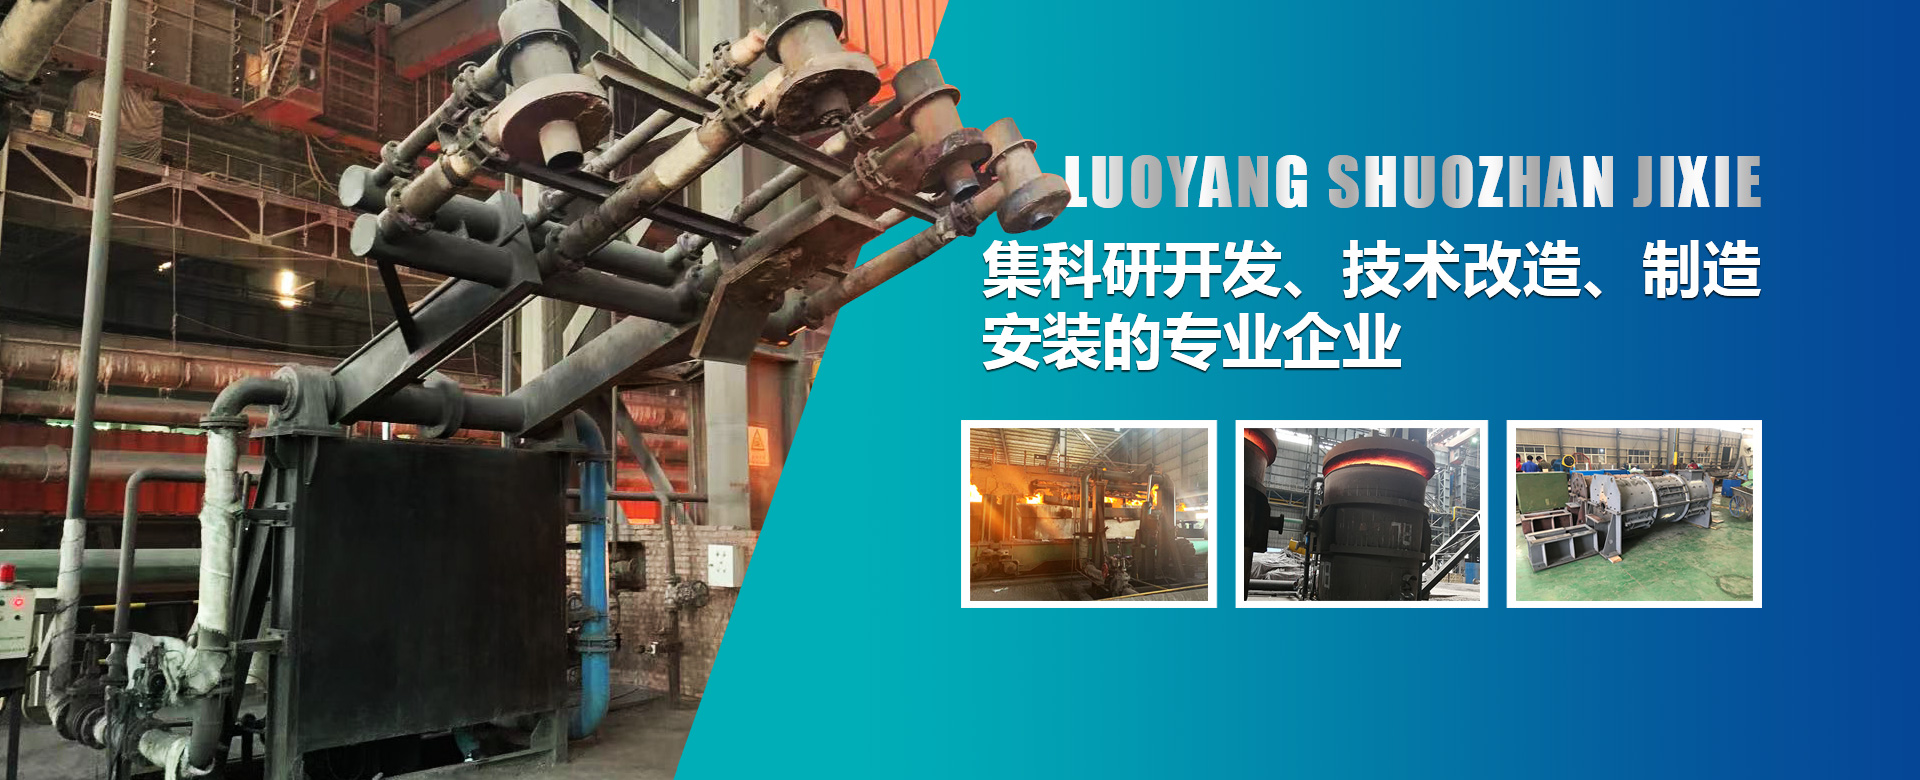 烘烤器是鋼鐵廠生產的必須設備，也是鋼鐵生產過程中能耗較大的設備